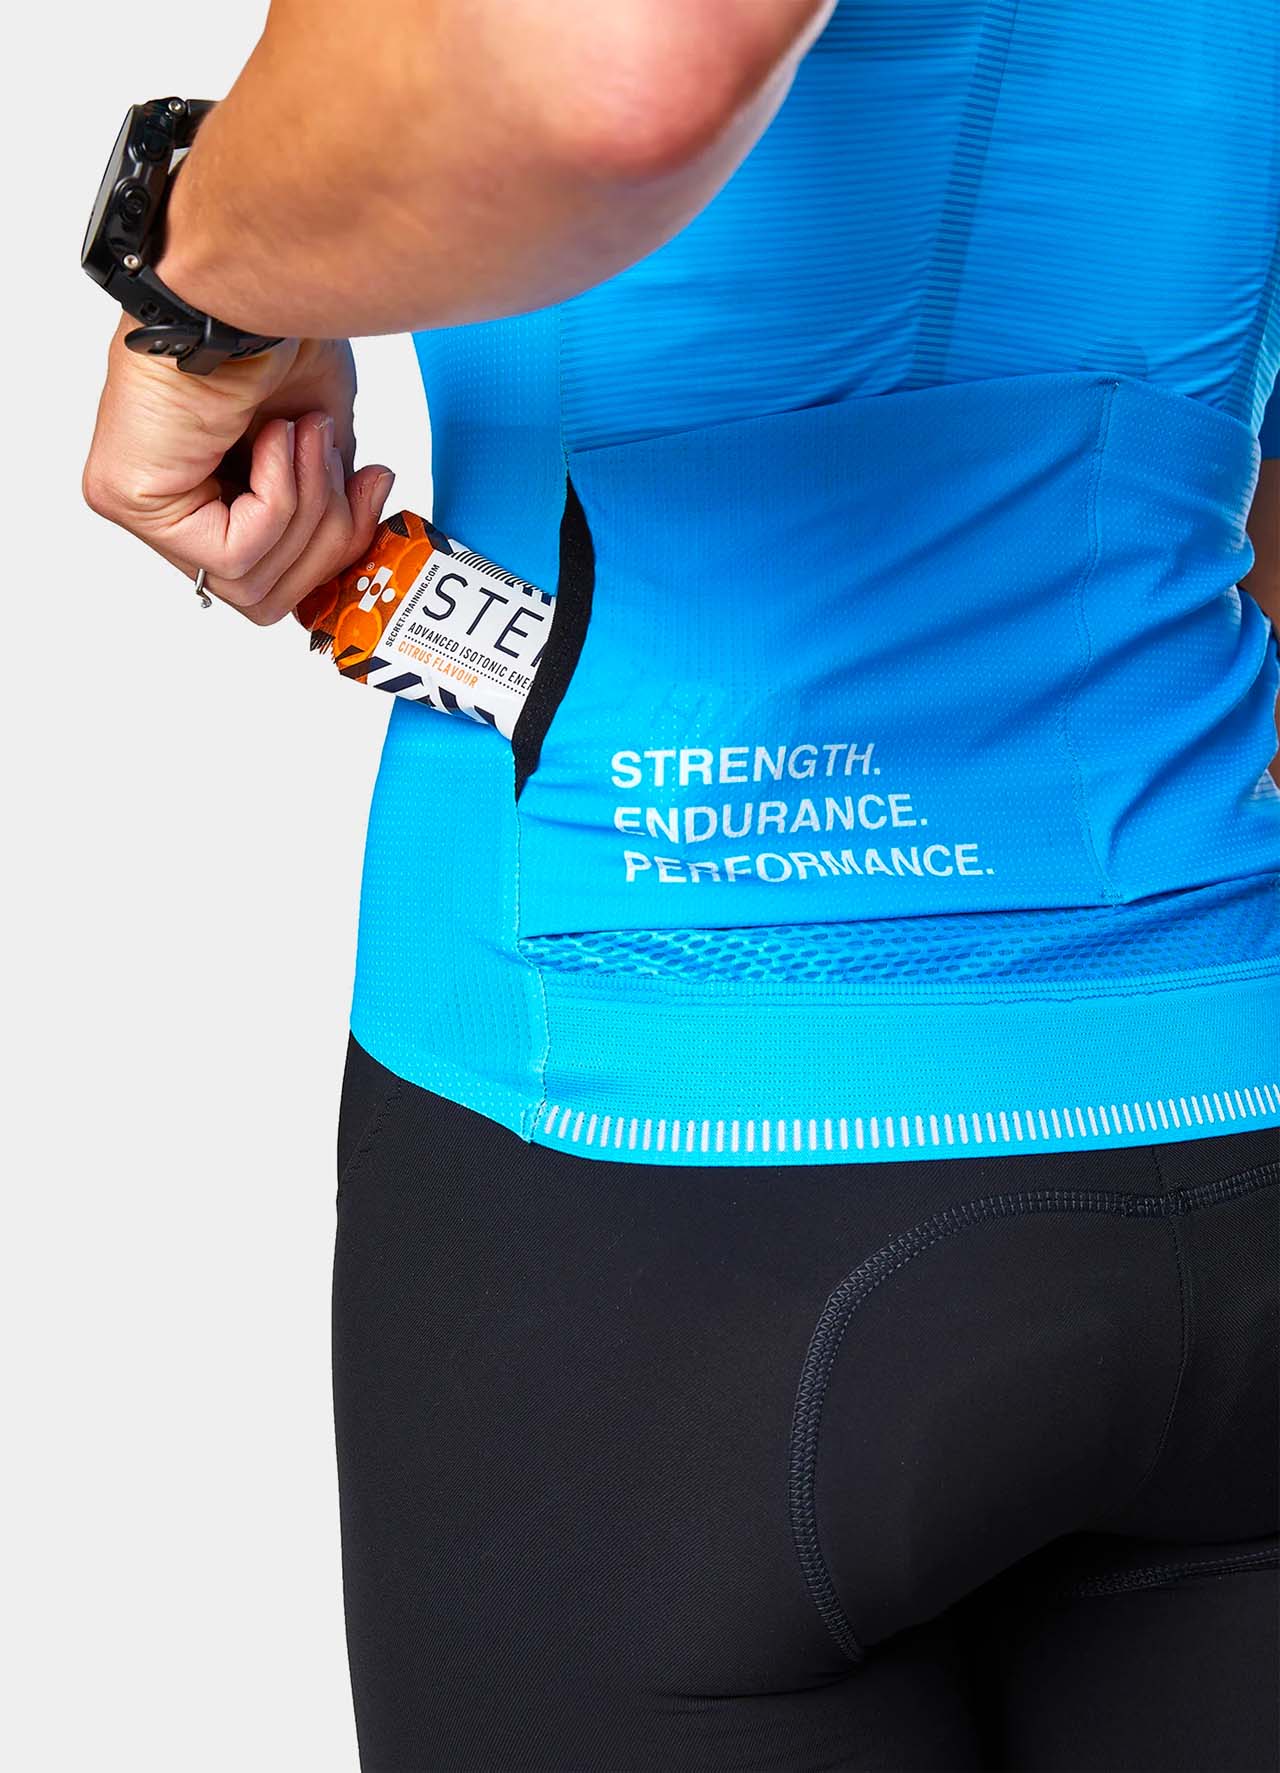 TRI-FIT SYKL PRO Women's Short Sleeve Cycling Jersey - Earth - Aero Rear Pocket